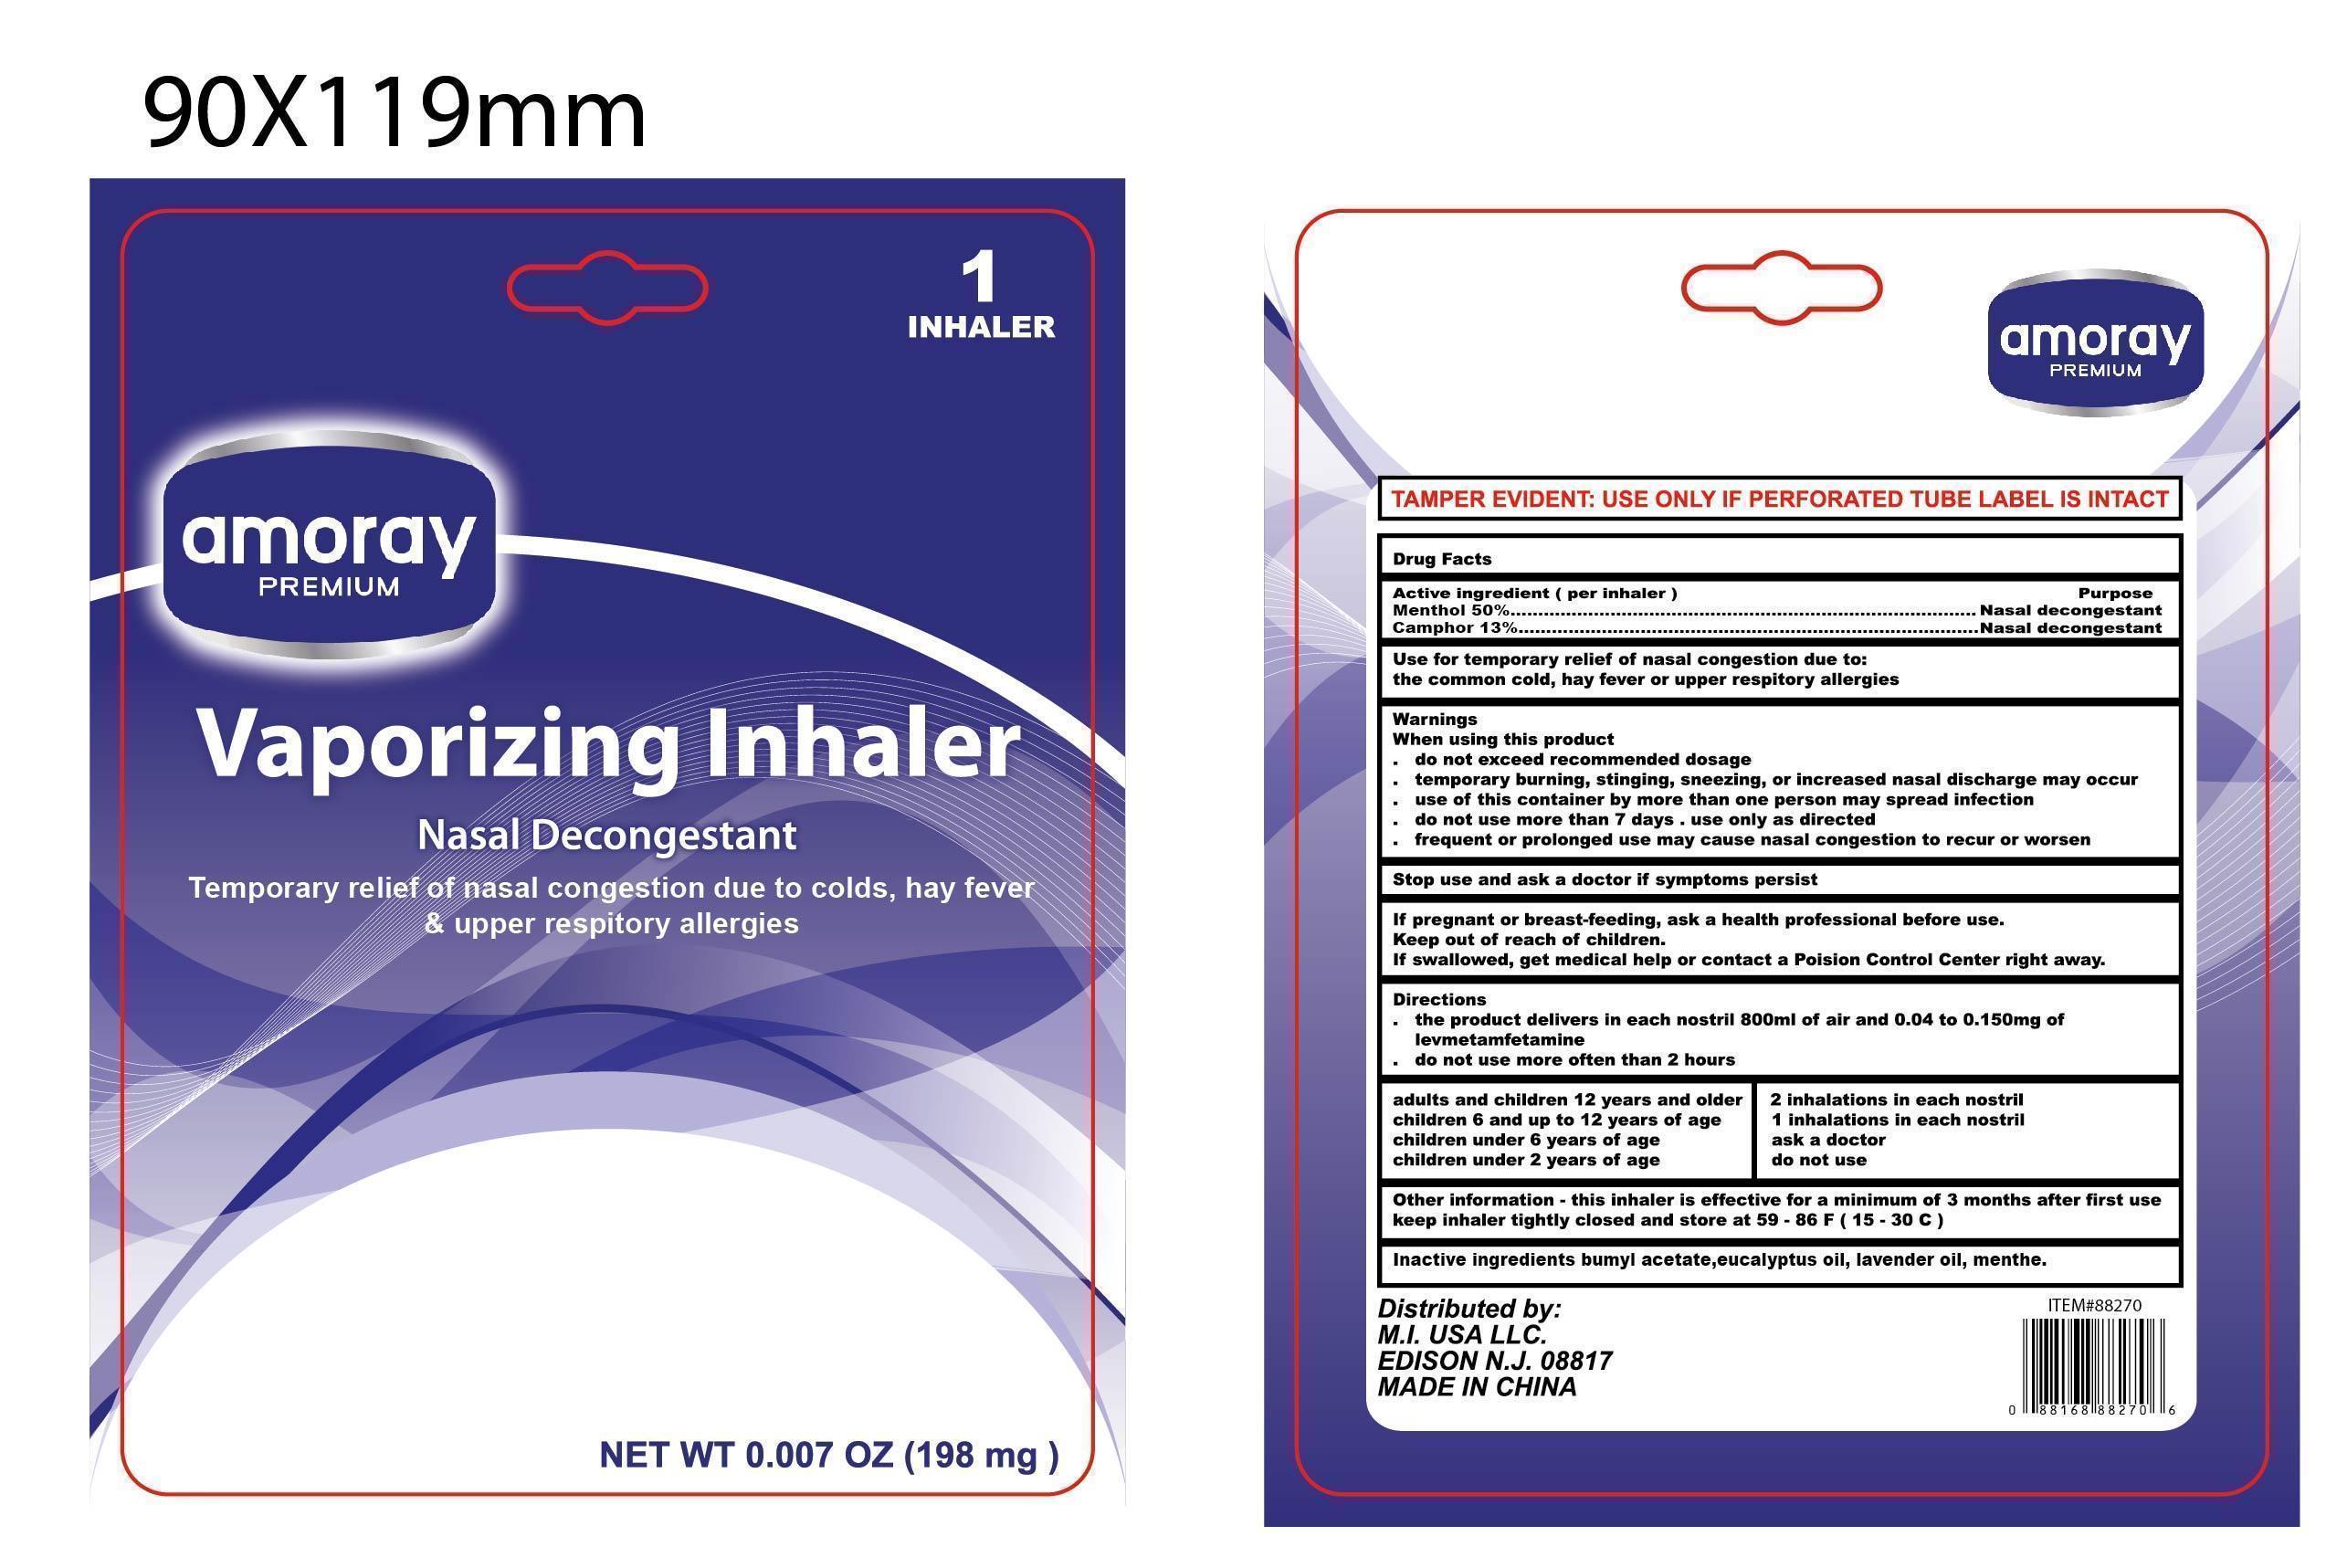 Inhaler label